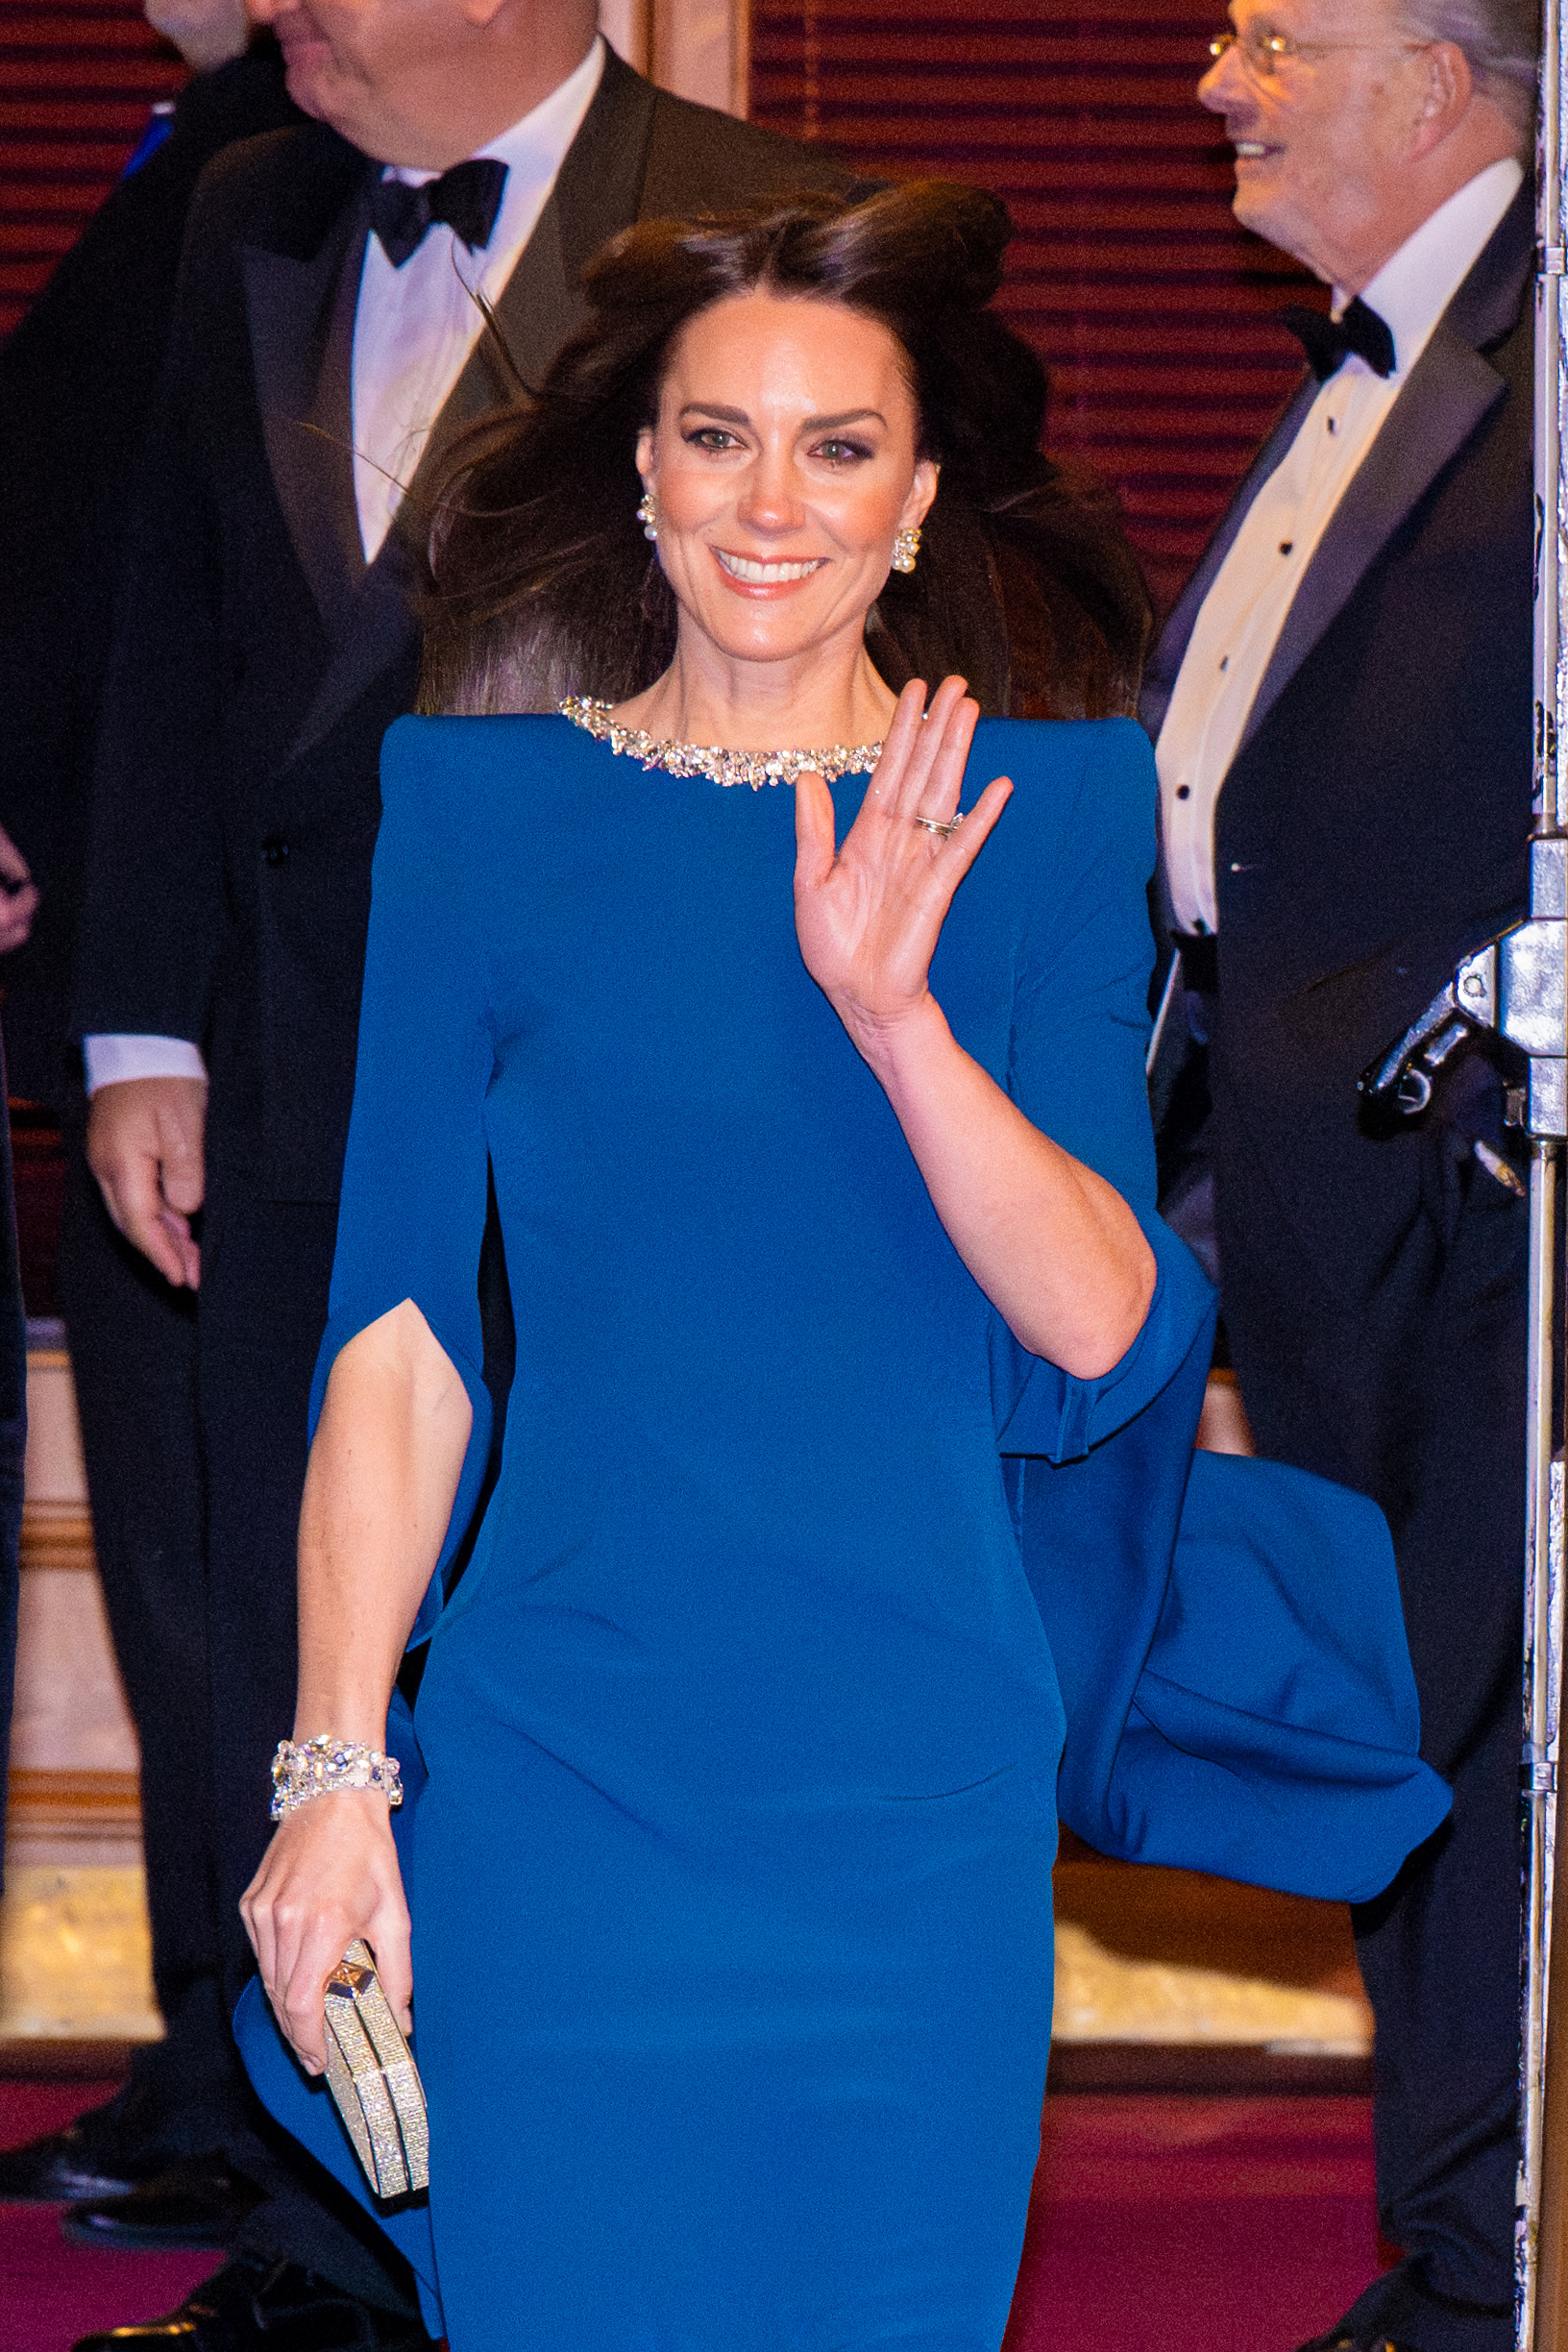 La princesse de Galles est apparue royale au Royal Variety Show après la diffusion des affirmations explosives de Endgame.